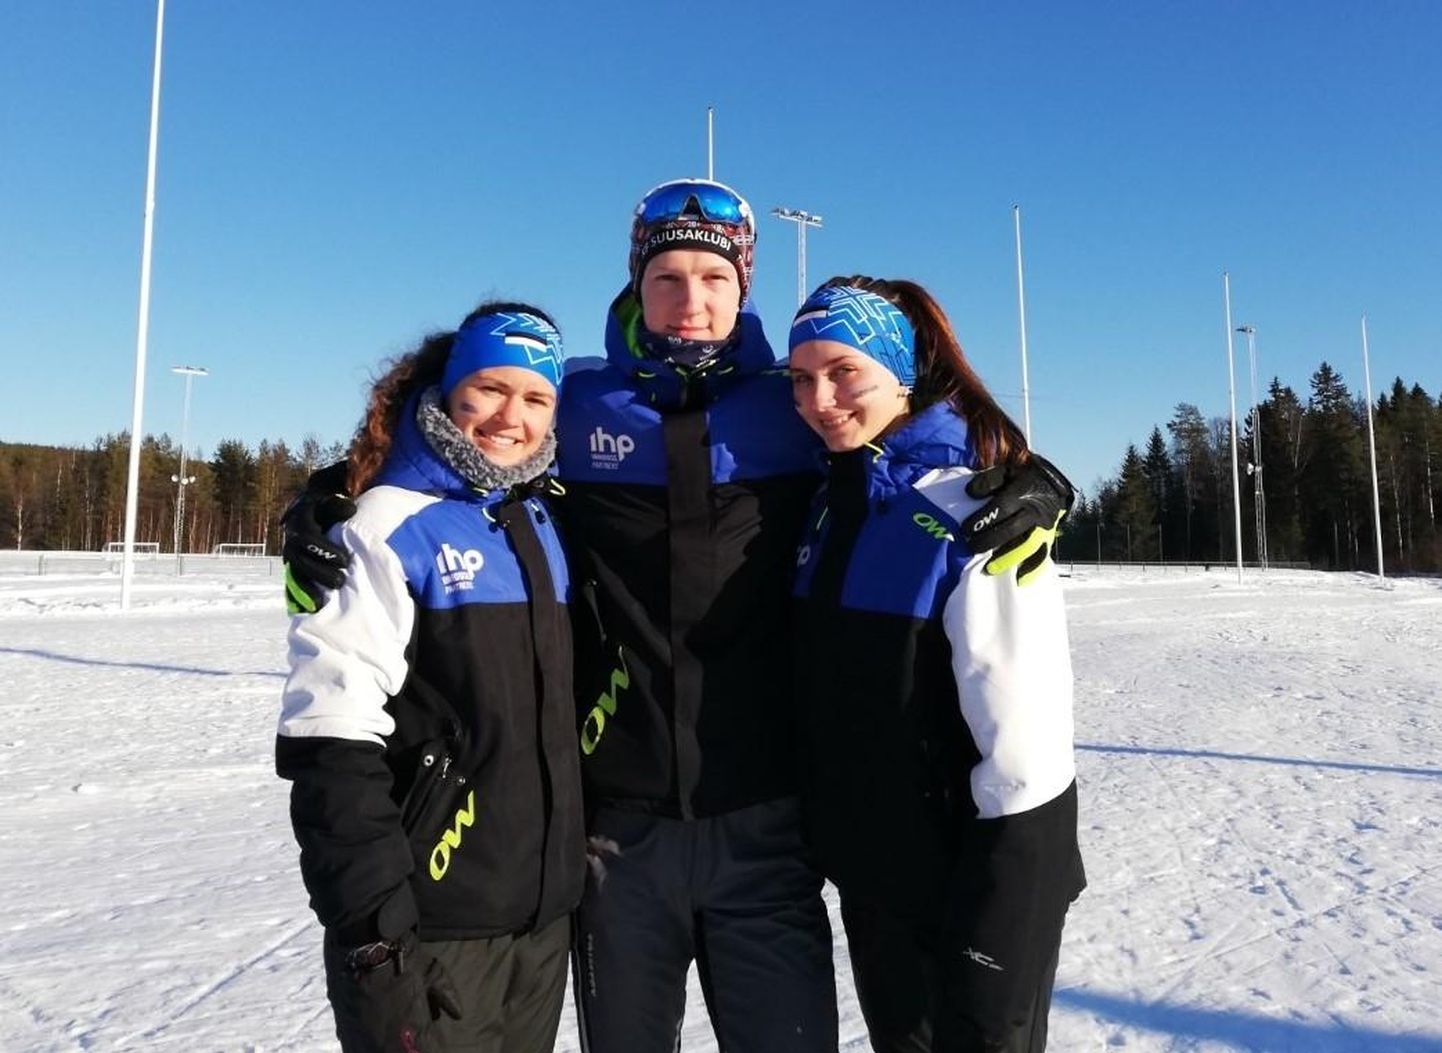 Rootsis Eesti värve esindanud Lääne-Viru suusaorienteerujad Epp Paalberg (vasakult), Sander Pritsik ja Liis-Marii Kaso kuuluvad kõik Rakvere Orienteerumisklubisse.